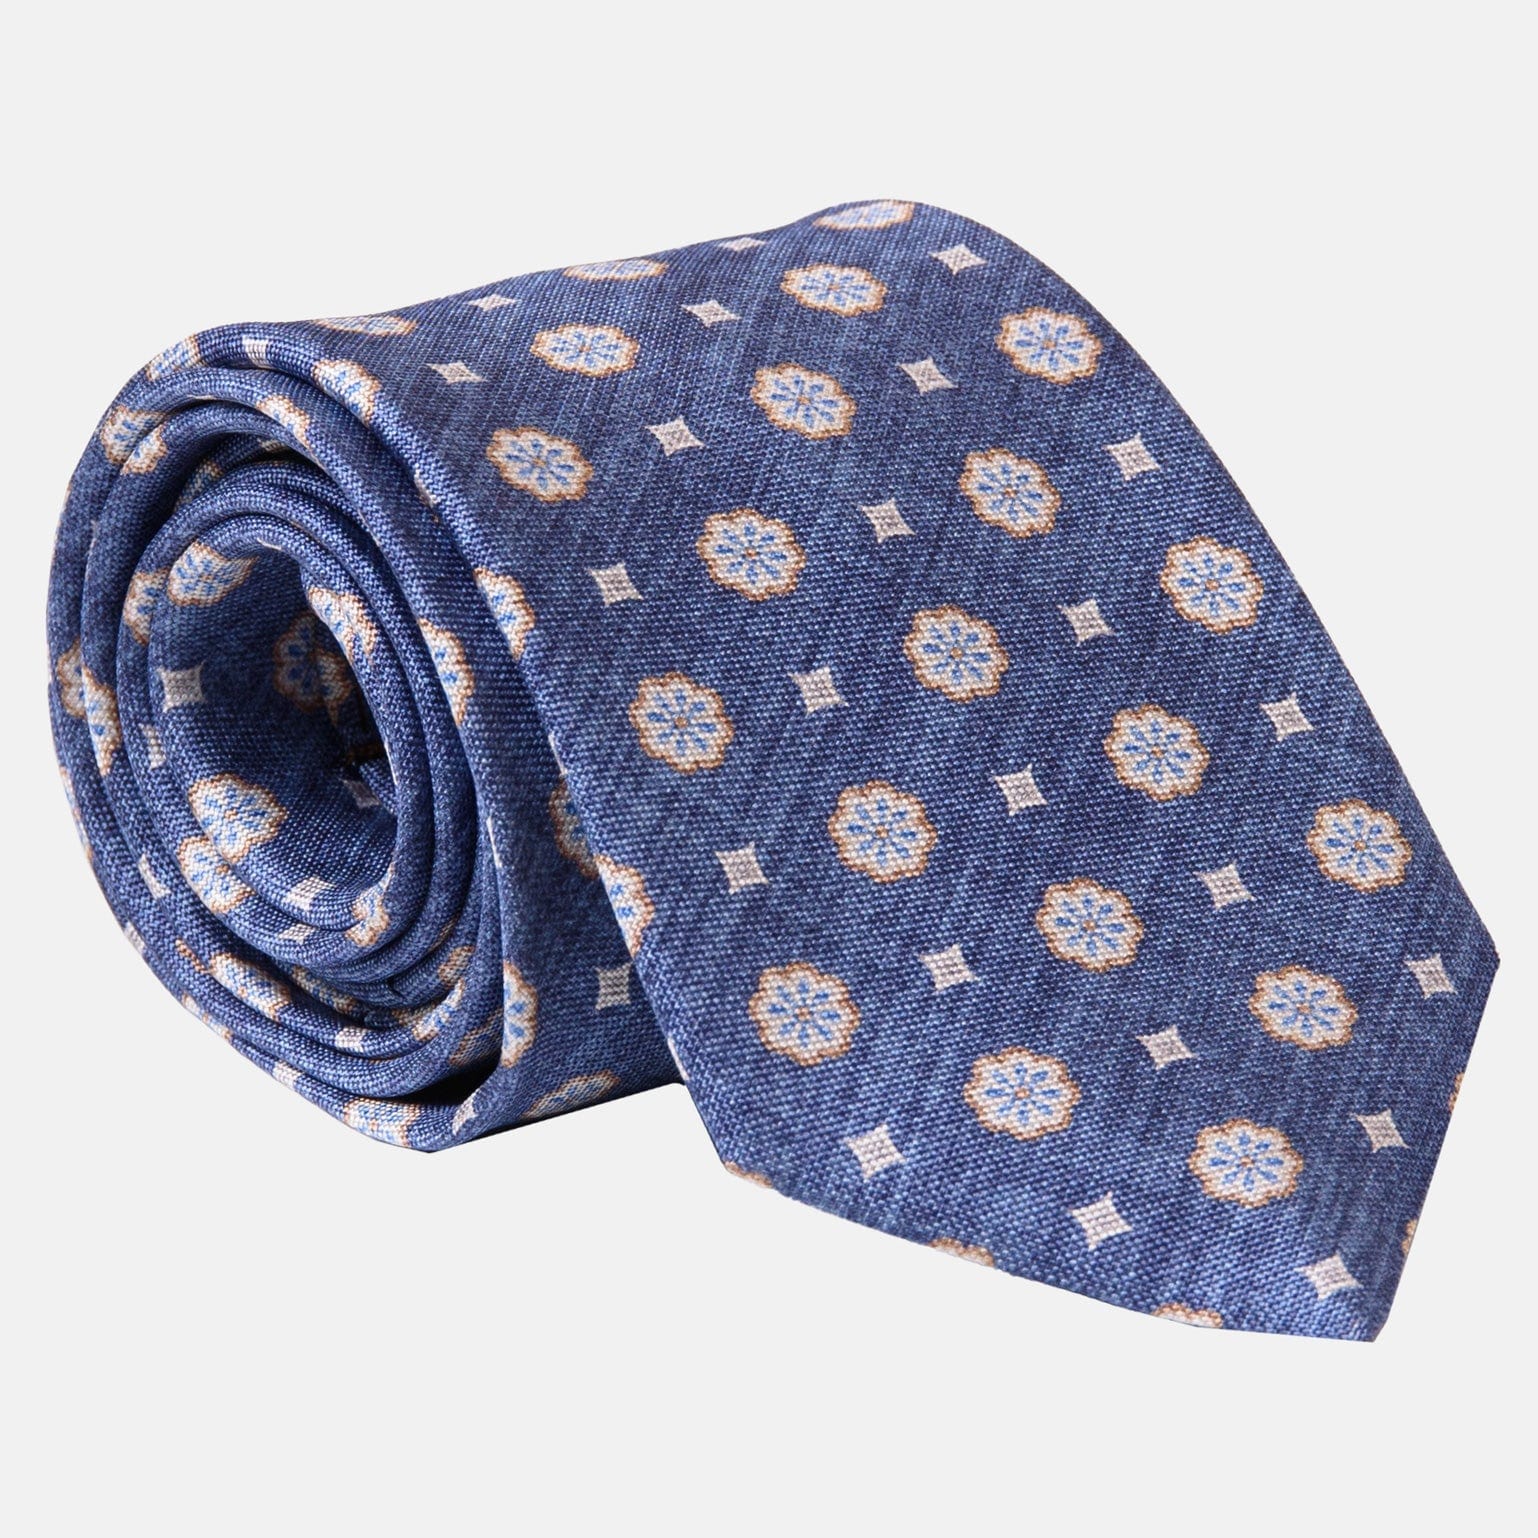 Extra Long Blue Medallion Italian Silk Tie